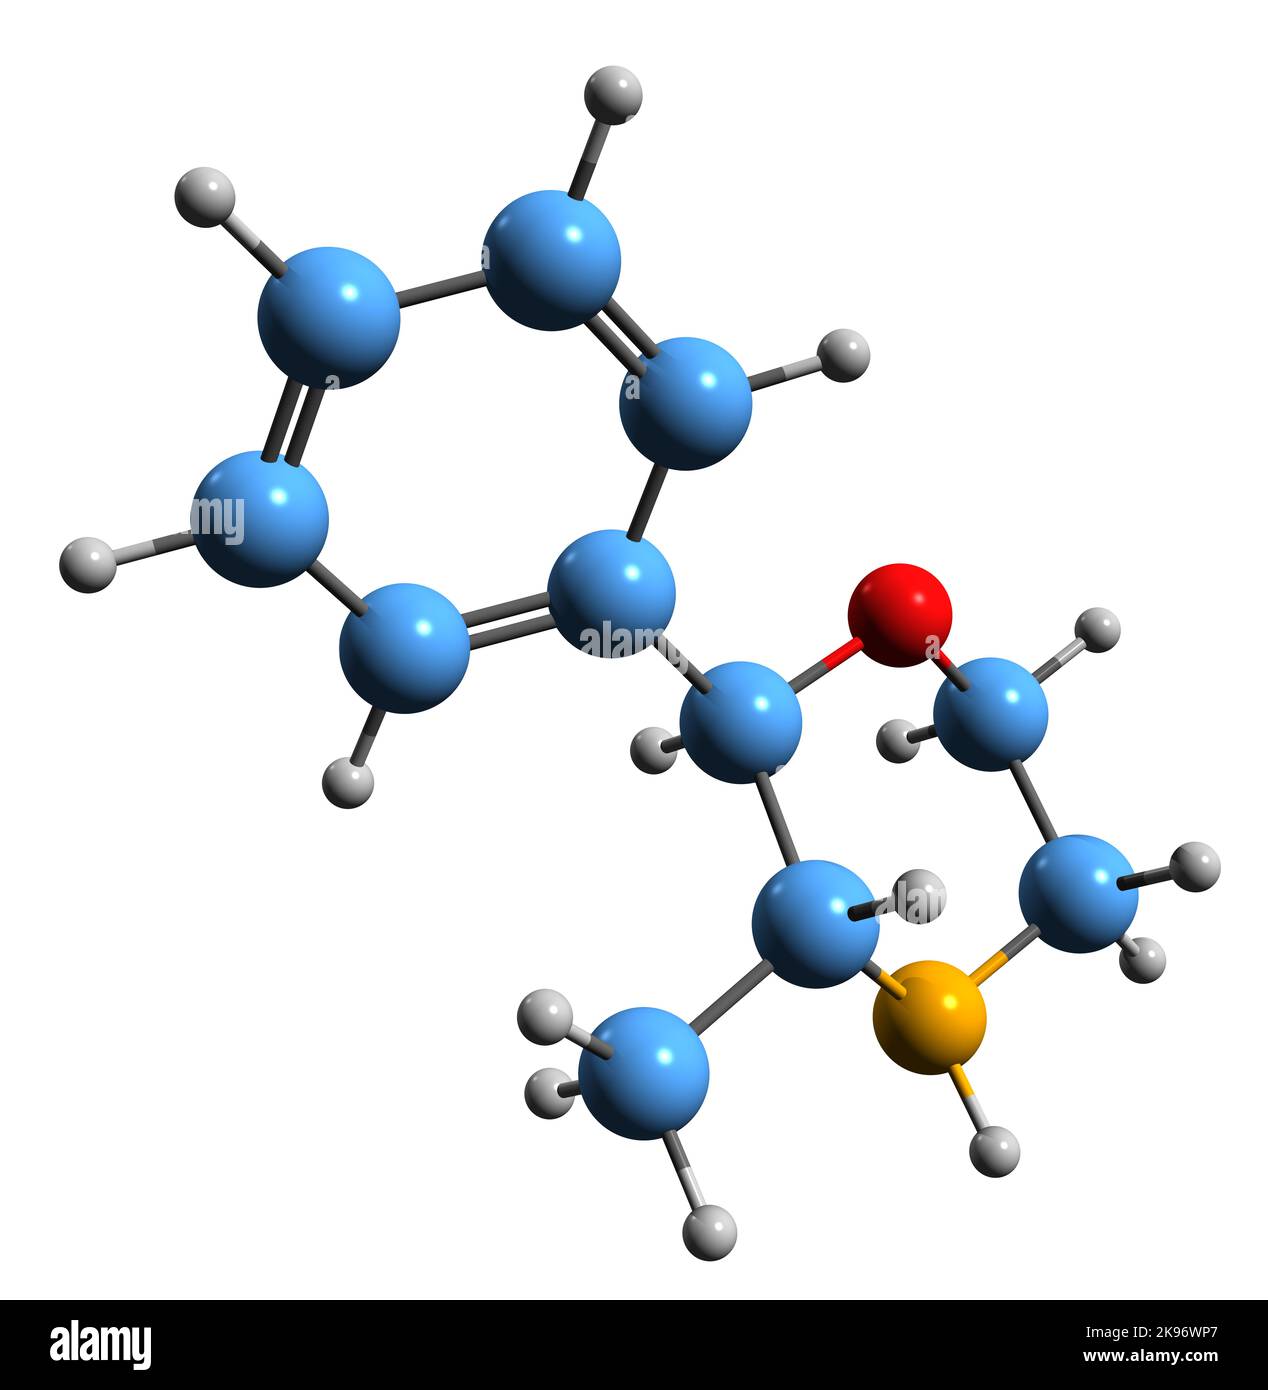 3D image of Phenmetrazine skeletal formula - molecular chemical structure of stimulant drug isolated on white background Stock Photo